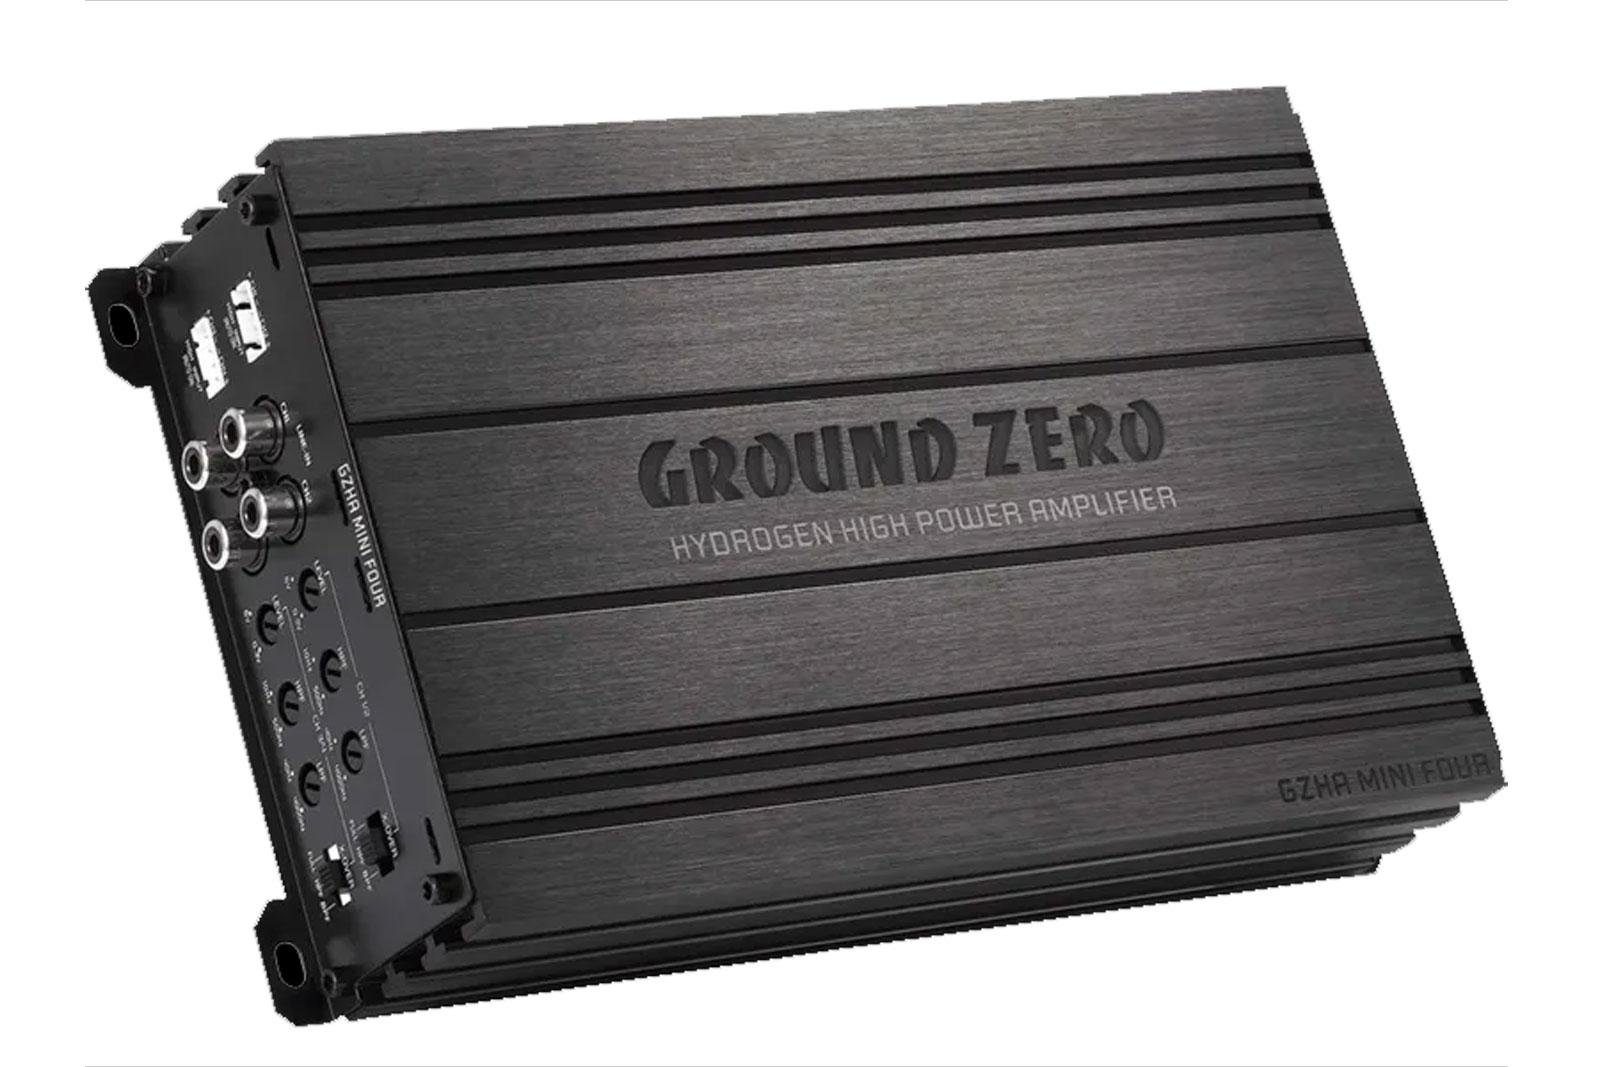 Auto Zero W Class Audioverstärker 640 MINI D 4-Kanal Kompaktverstärker Endstufe GZHA Ground FOUR